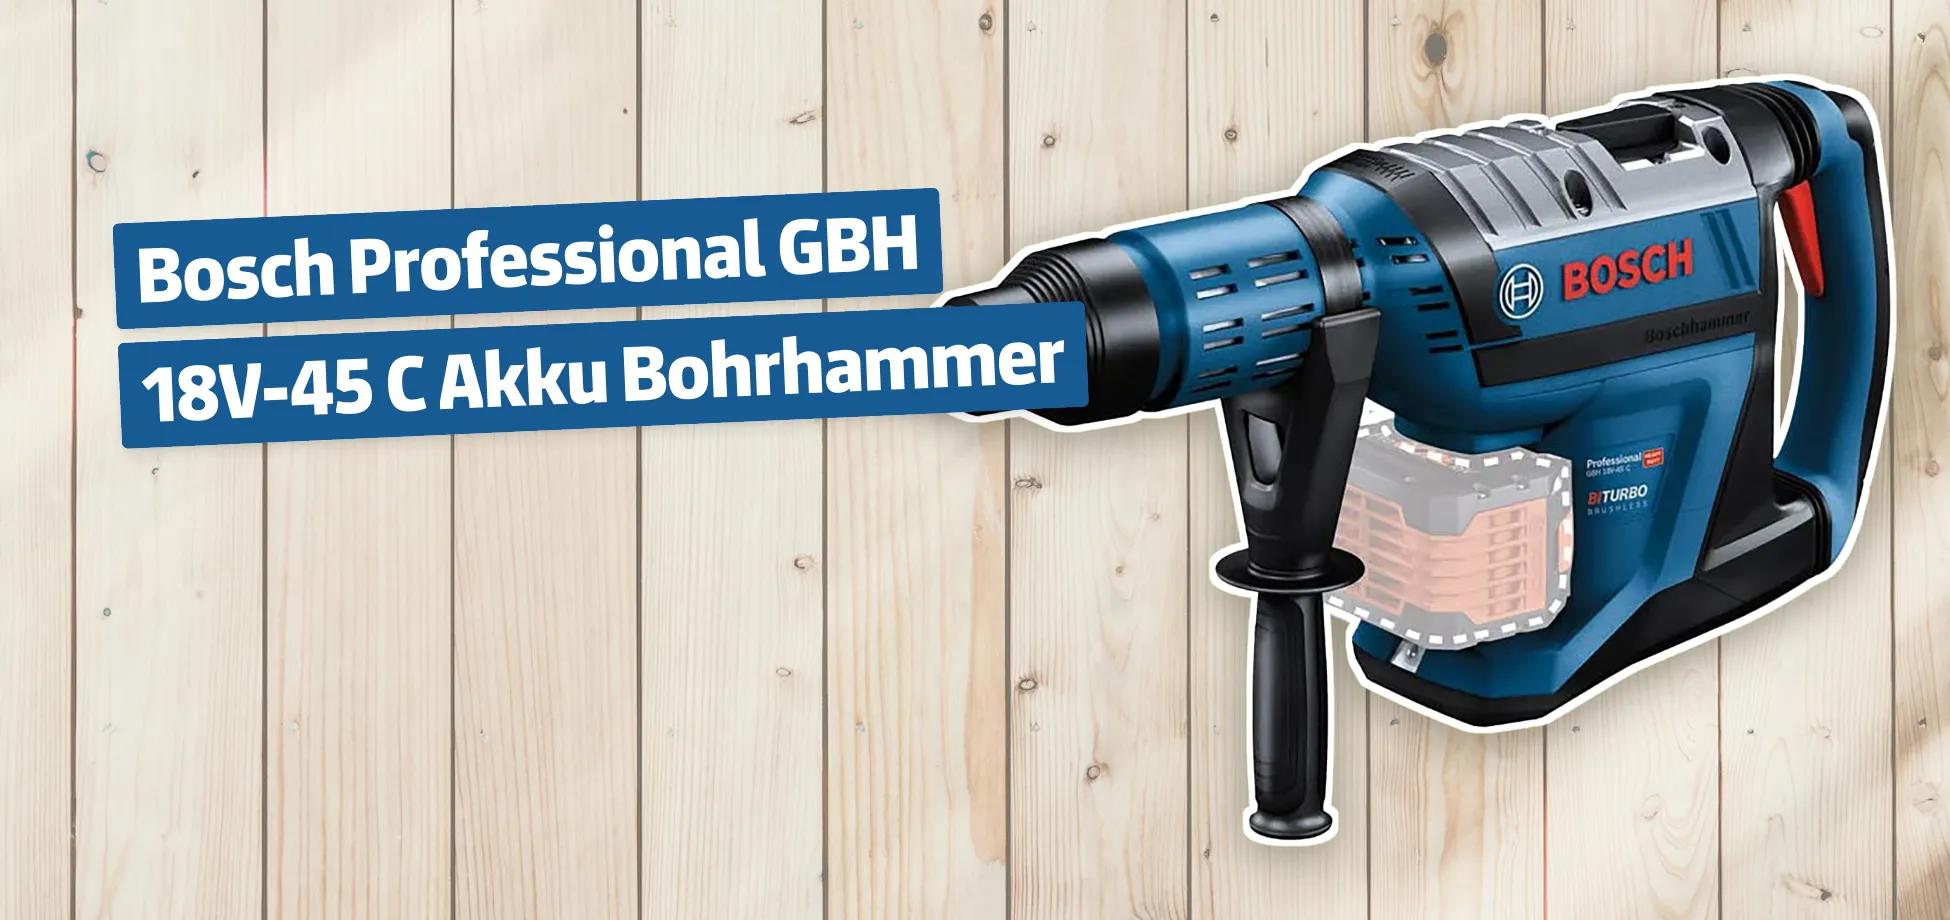 Bosch Professional GBH 18V-45 C Akku Bohrhammer